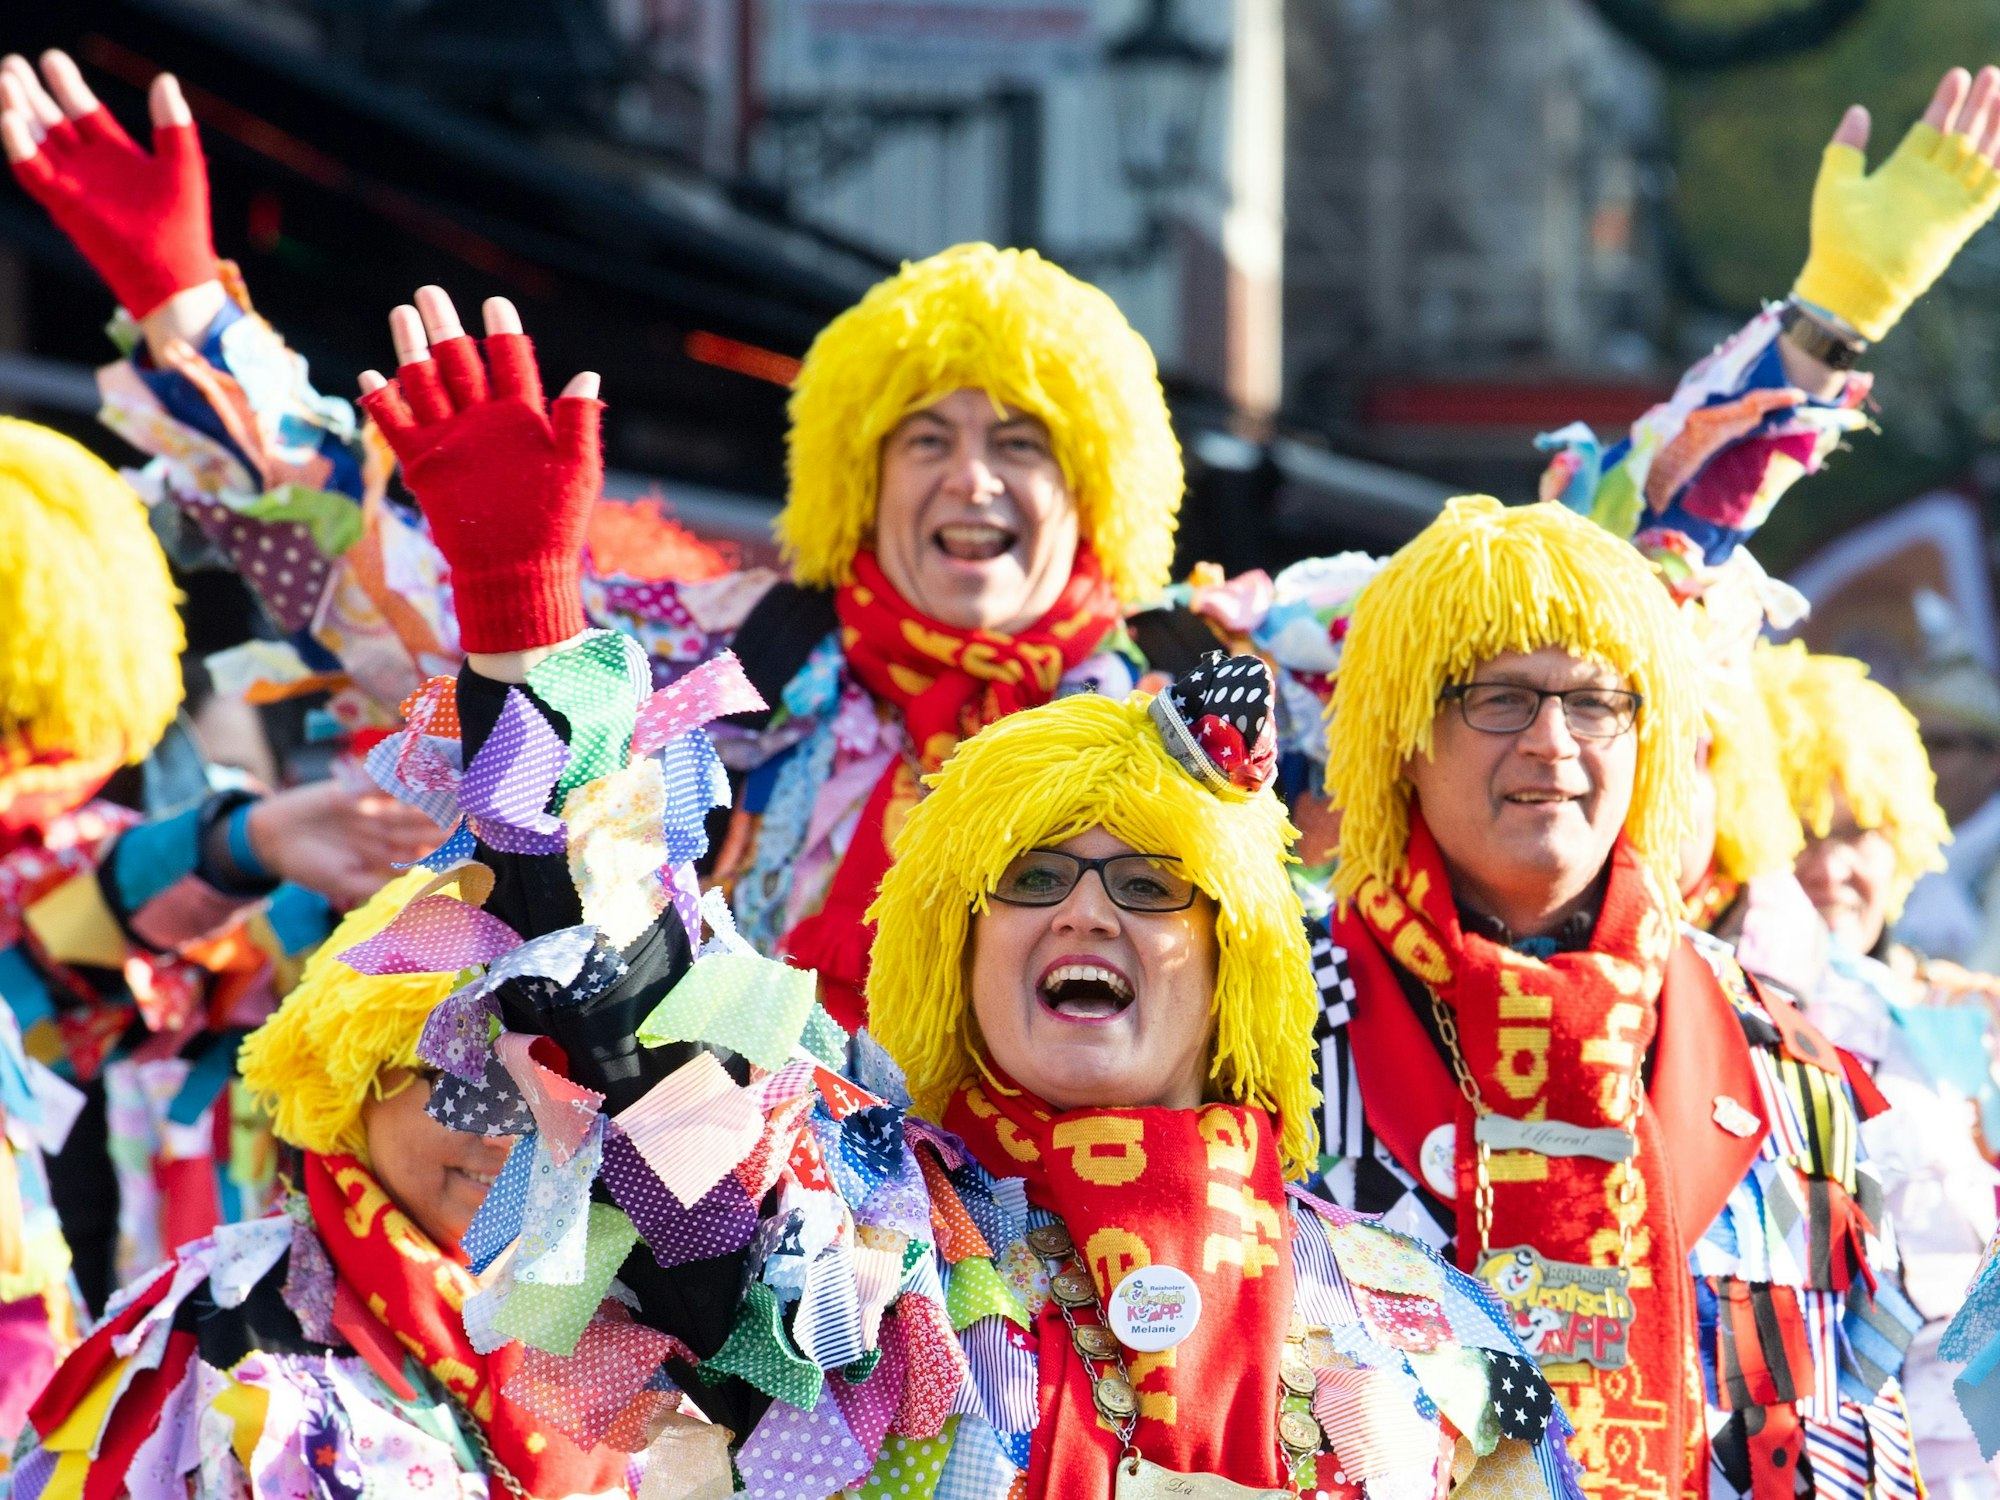 Düsseldorf: Karnevalisten feiern auf dem Marktplatz das Hoppeditz-Erwachen. Der 11.11. wird dieses Jahr wieder unter Corona-Bedingungen in Präsenz gefeiert.